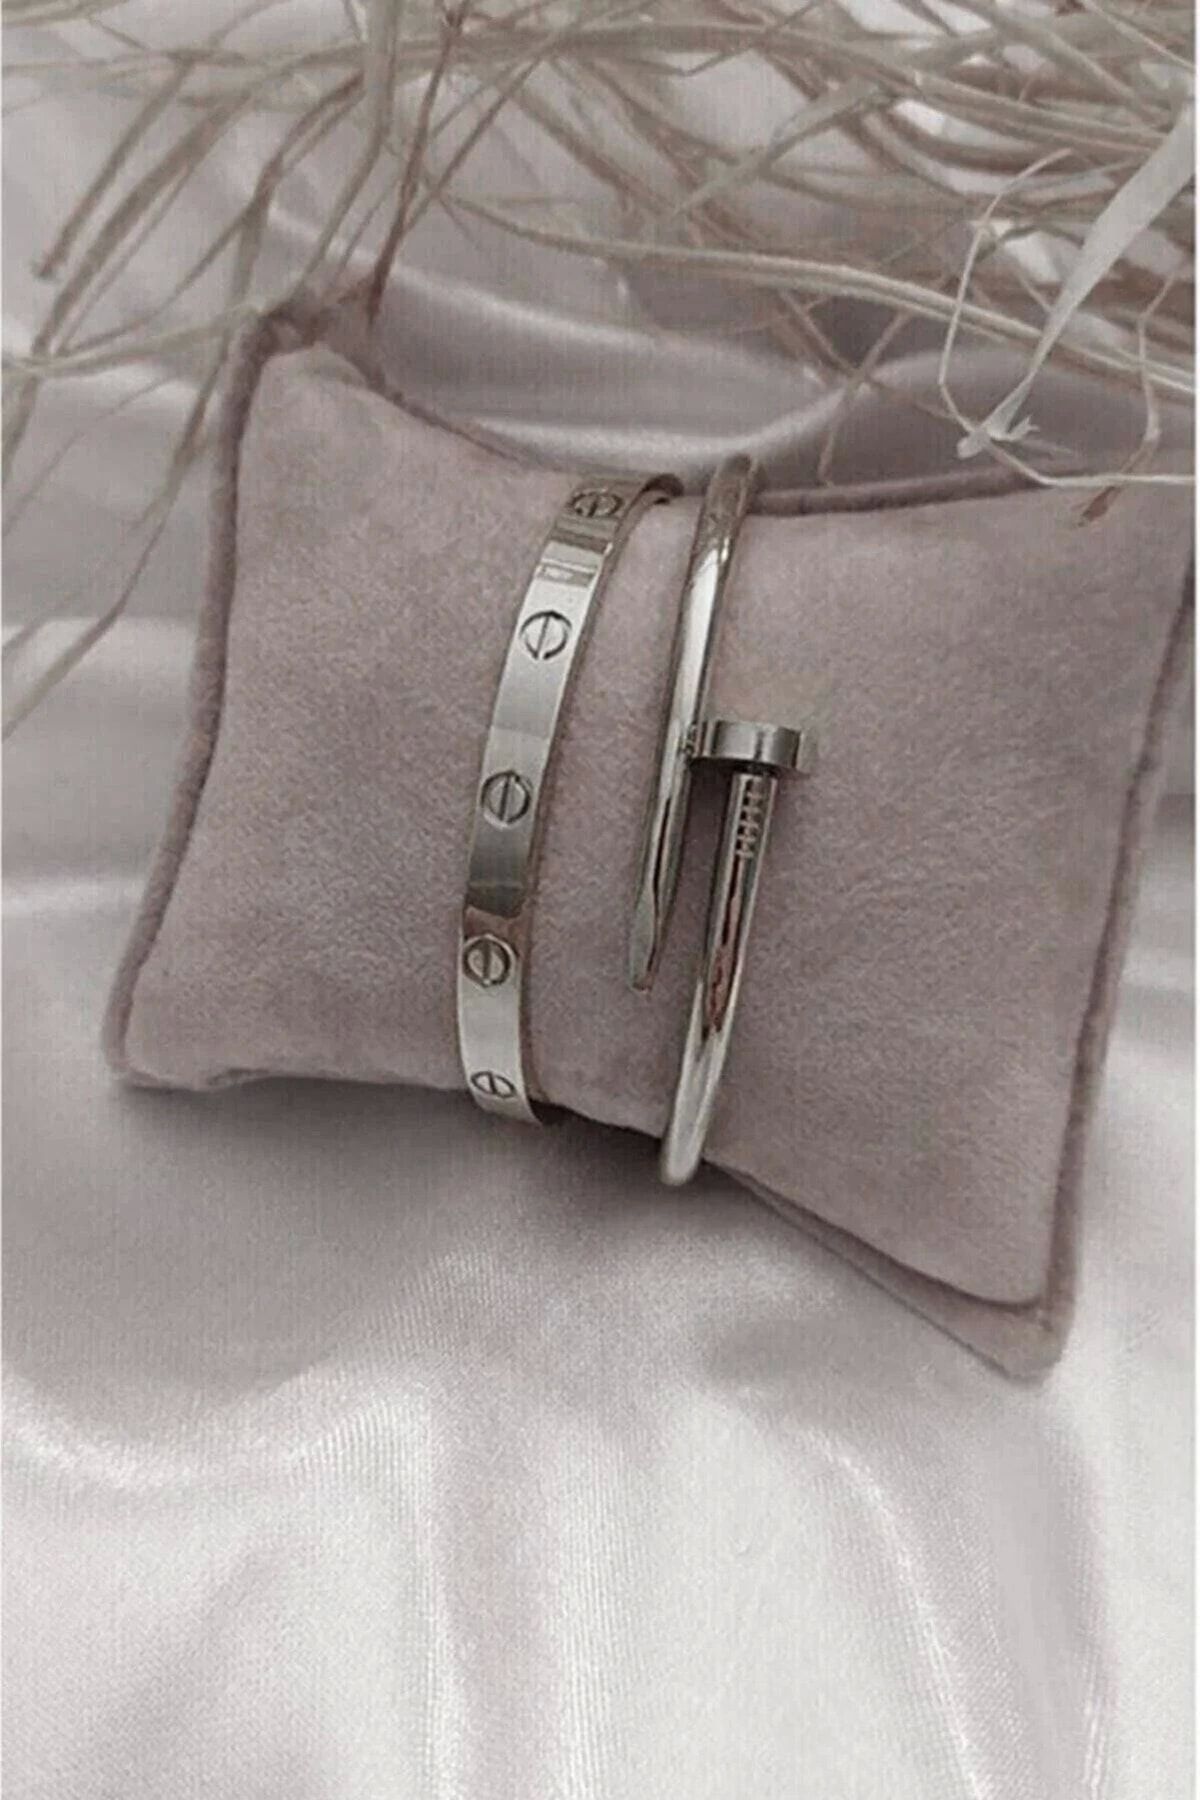 BERS AKSESUAR Çivi Ve Cartier Çelik Bileklik Set Gümüş Renk